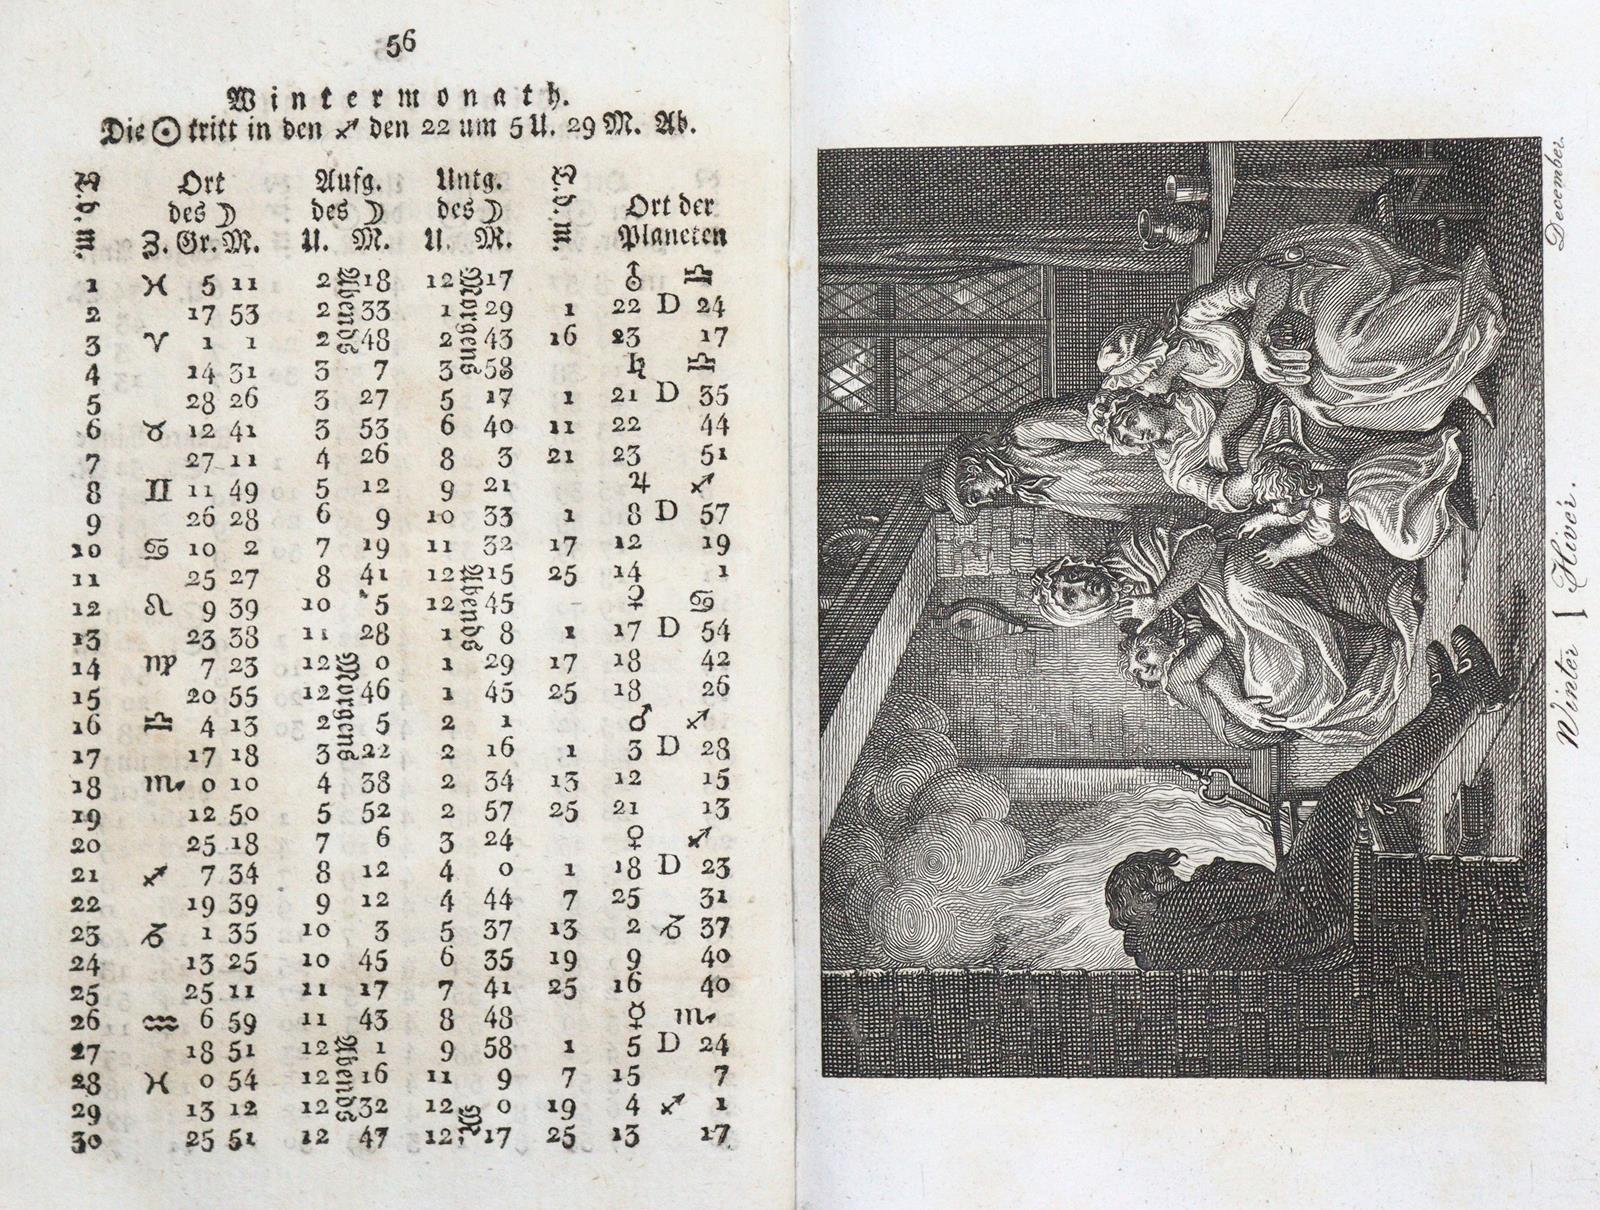 Almanac de Goettingue - Image 9 of 9